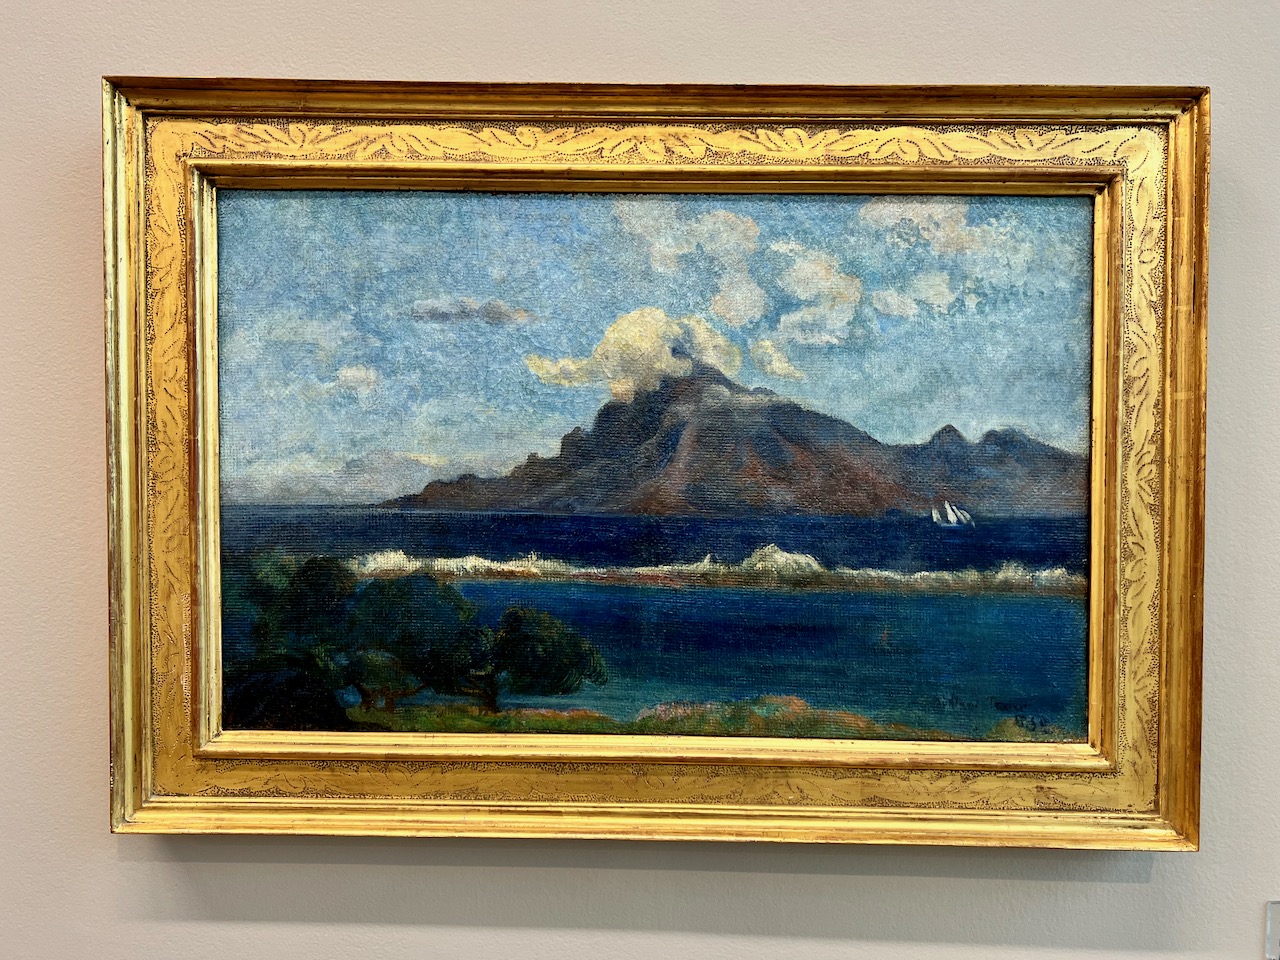 Paysage de Te Vaa, peint par Gauguin